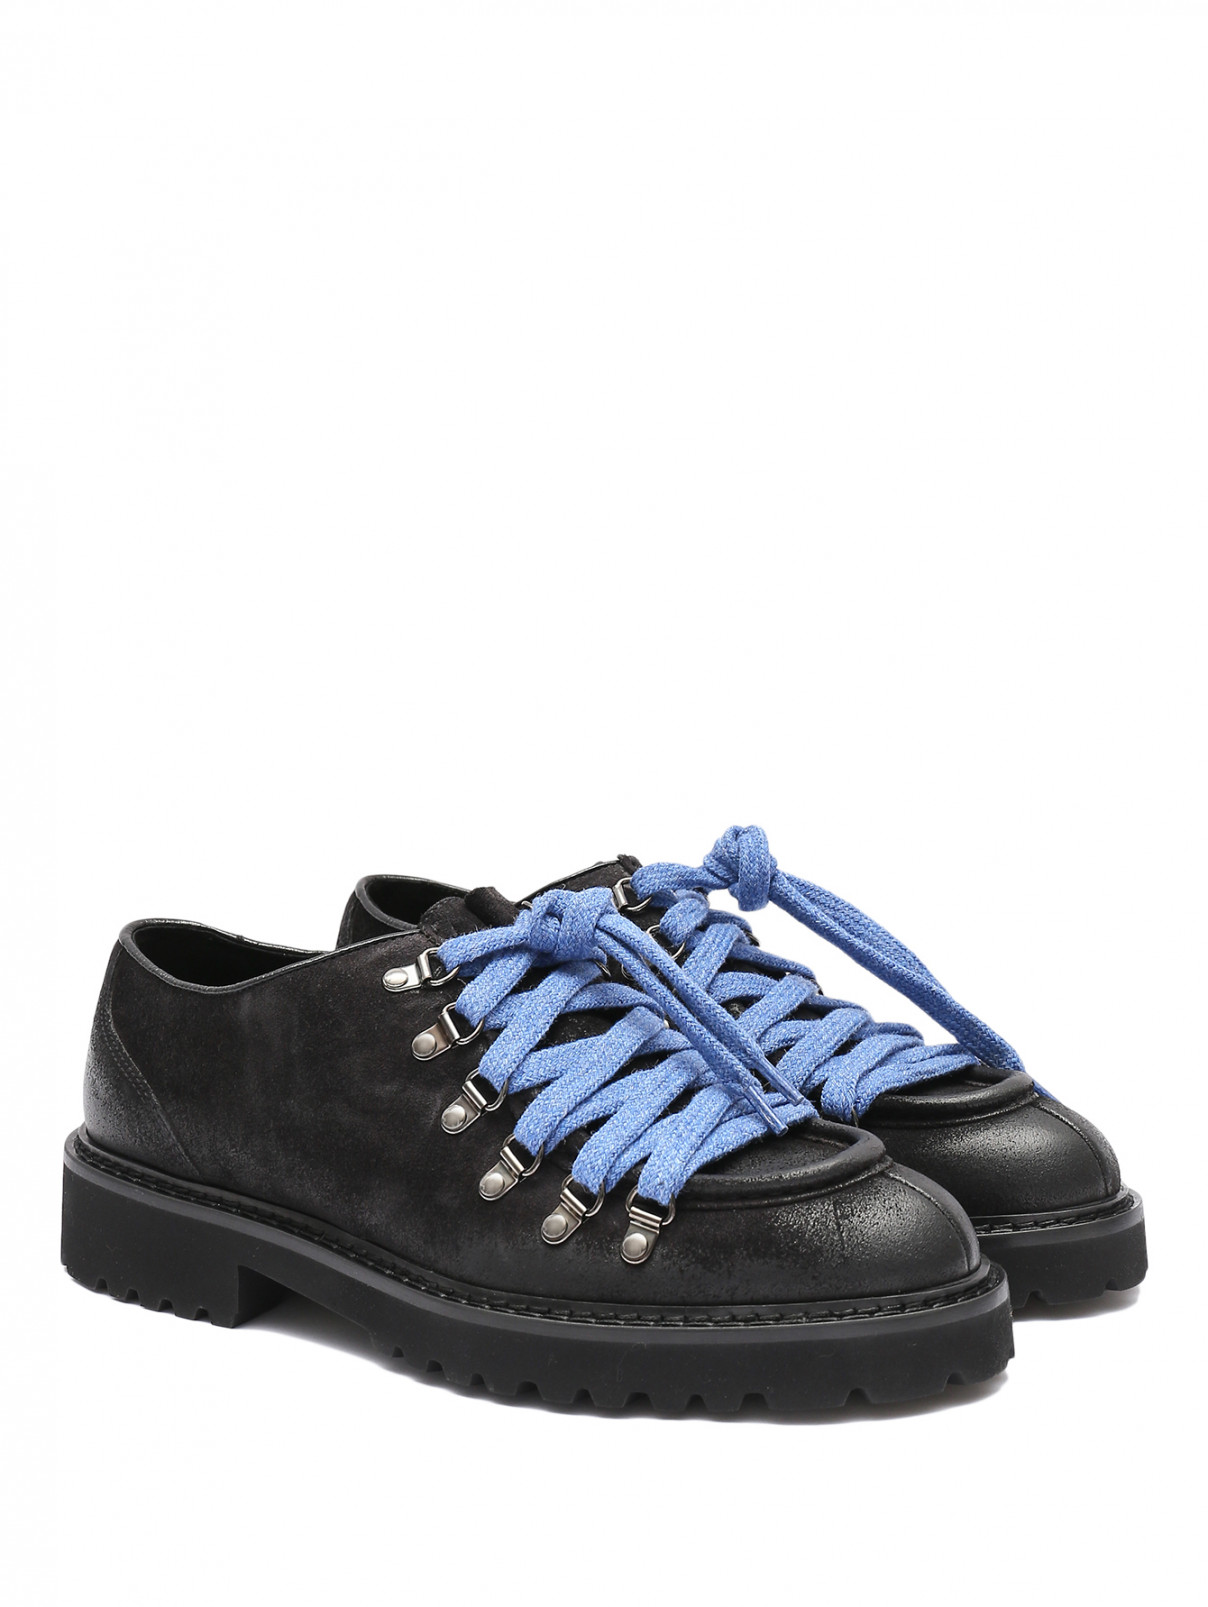 Замшевые ботинки с двумя парами шнурков Doucal's  –  Общий вид  – Цвет:  Черный